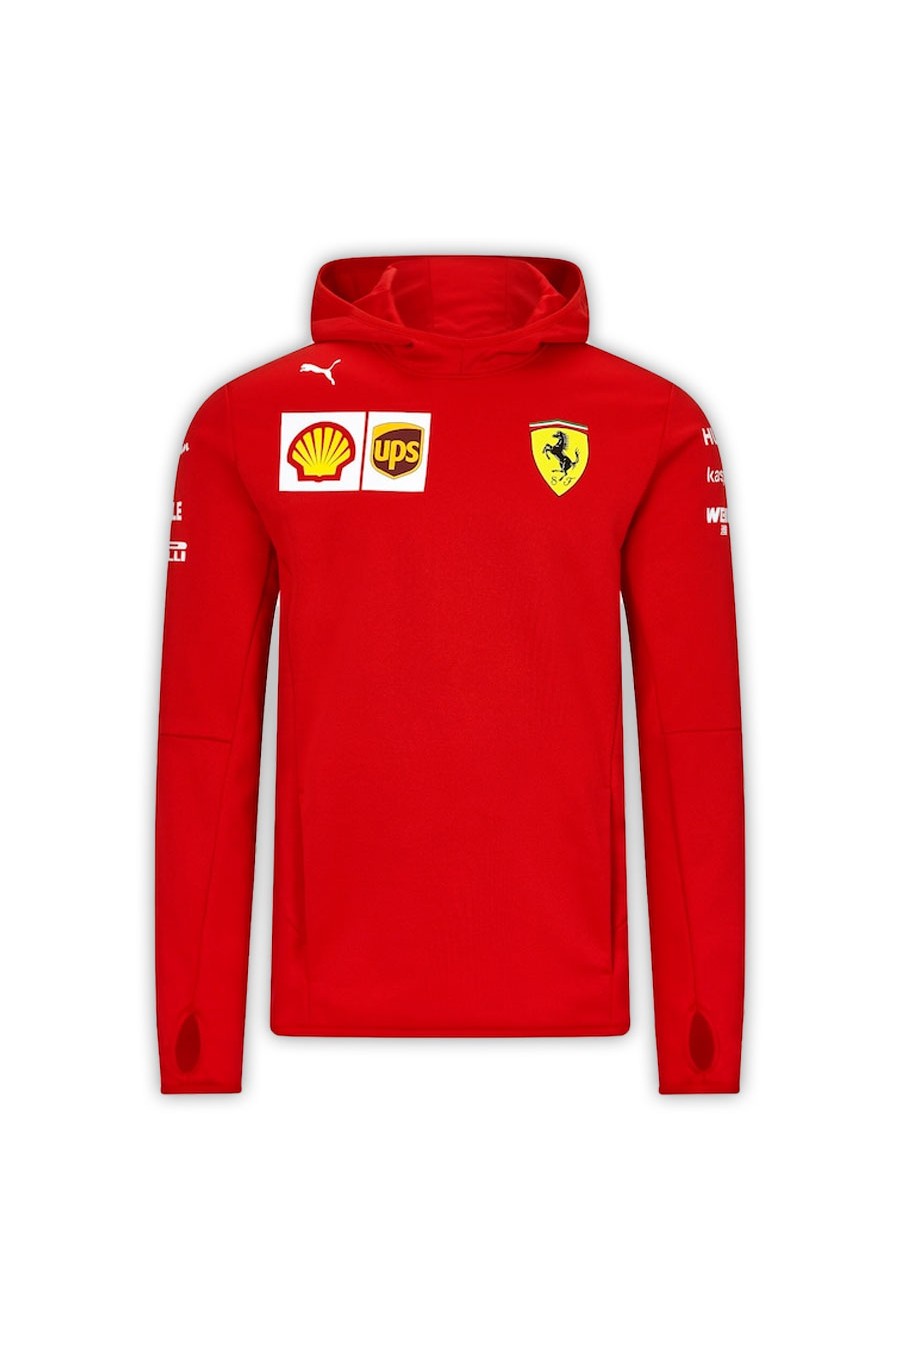 Scuderia Ferrari F1 sweatshirt | GPBox